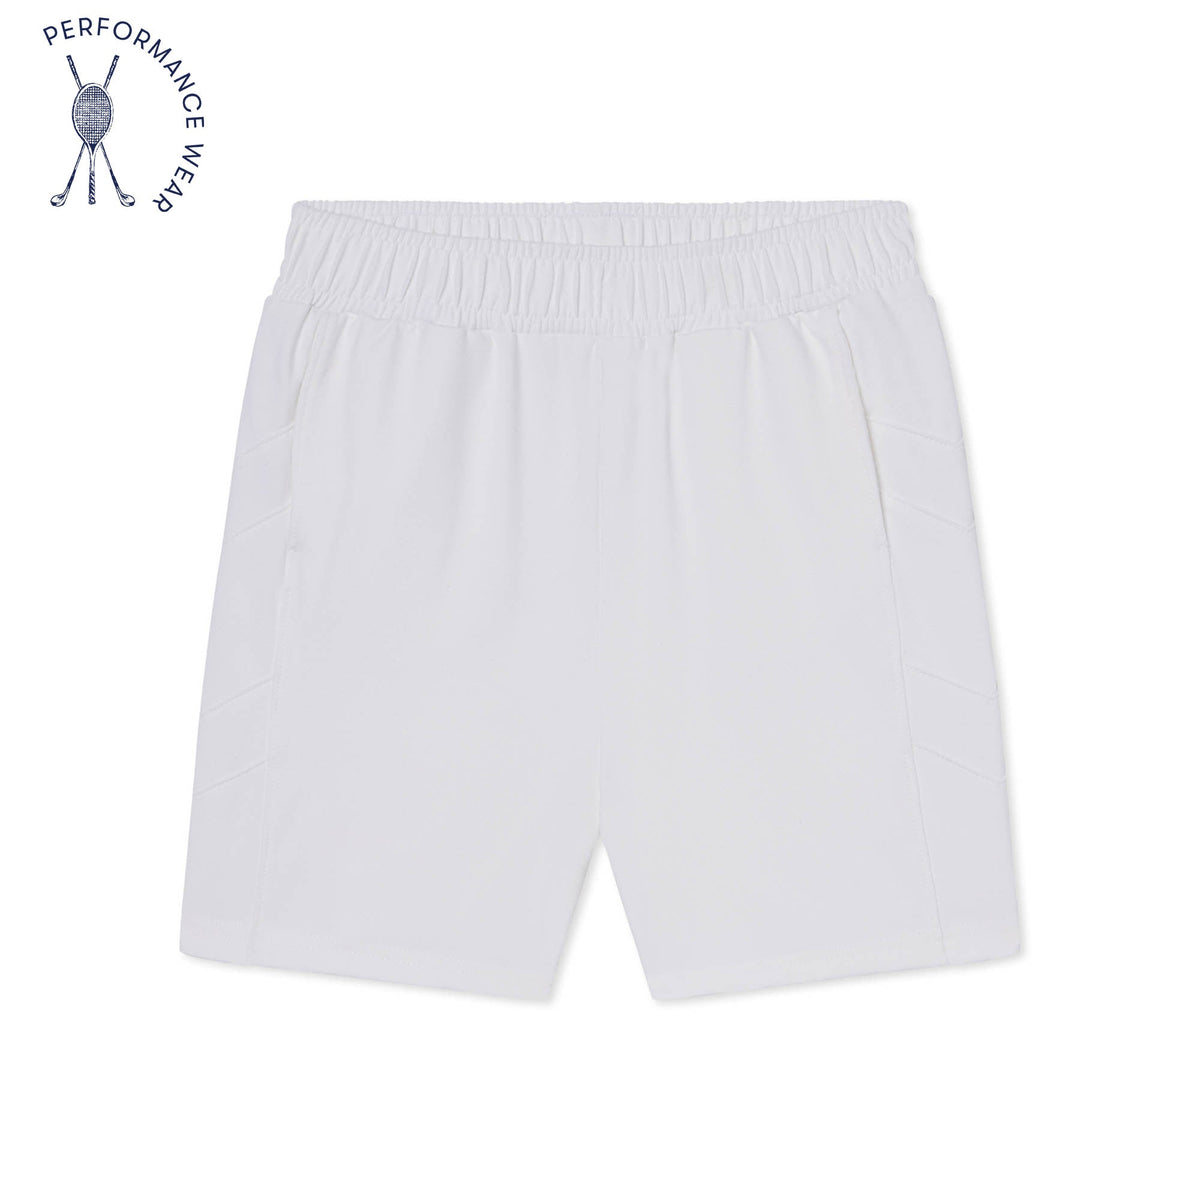 Classic and Preppy Tex Tennis Performance Chevron Short, Bright White-Bottoms-Bright White-XS (2-3T)-CPC - Classic Prep Childrenswear